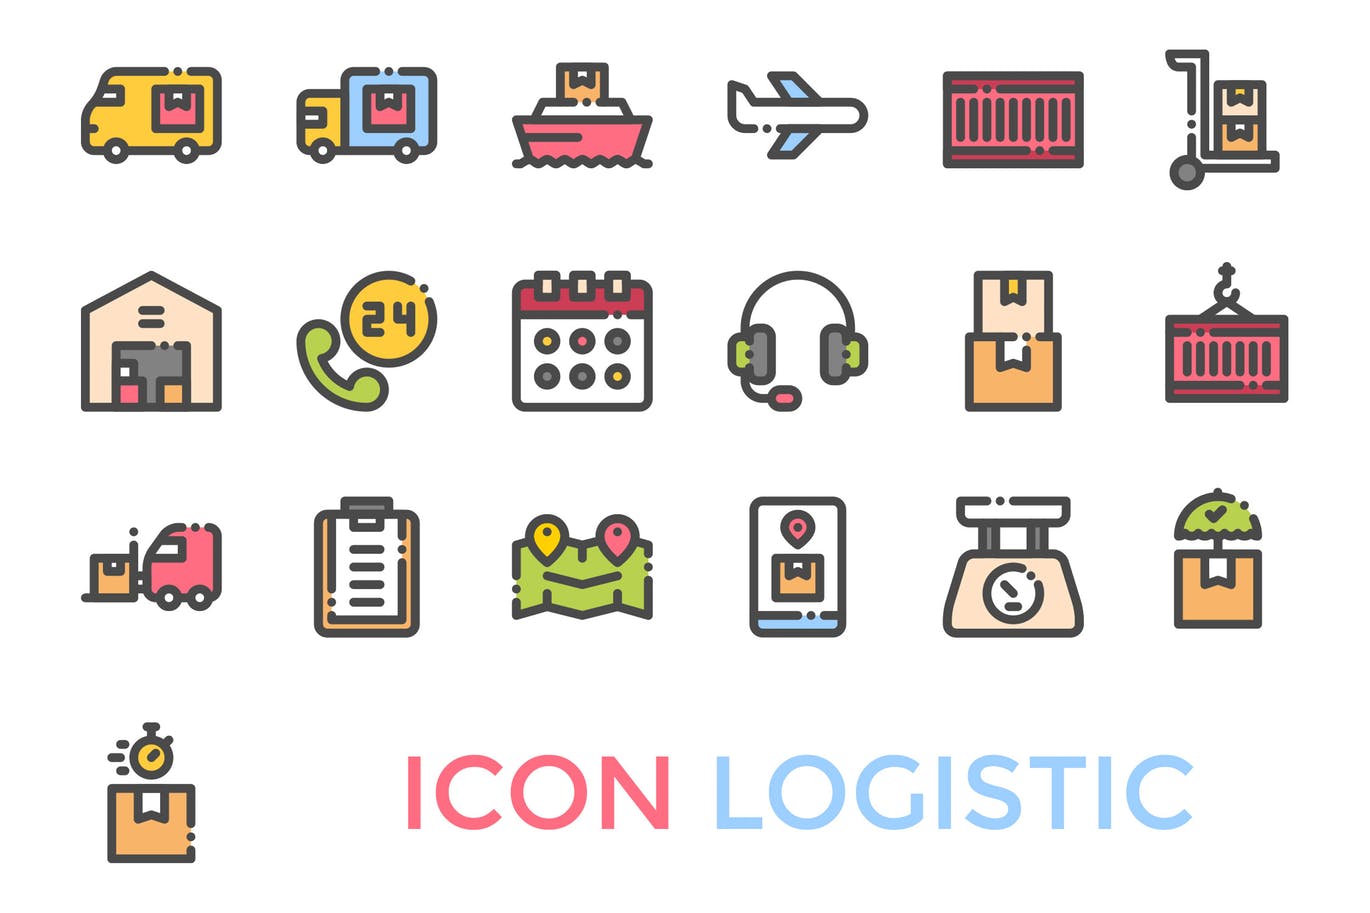 19枚物流配送主题矢量第一素材精选图标 Logistics Icon插图